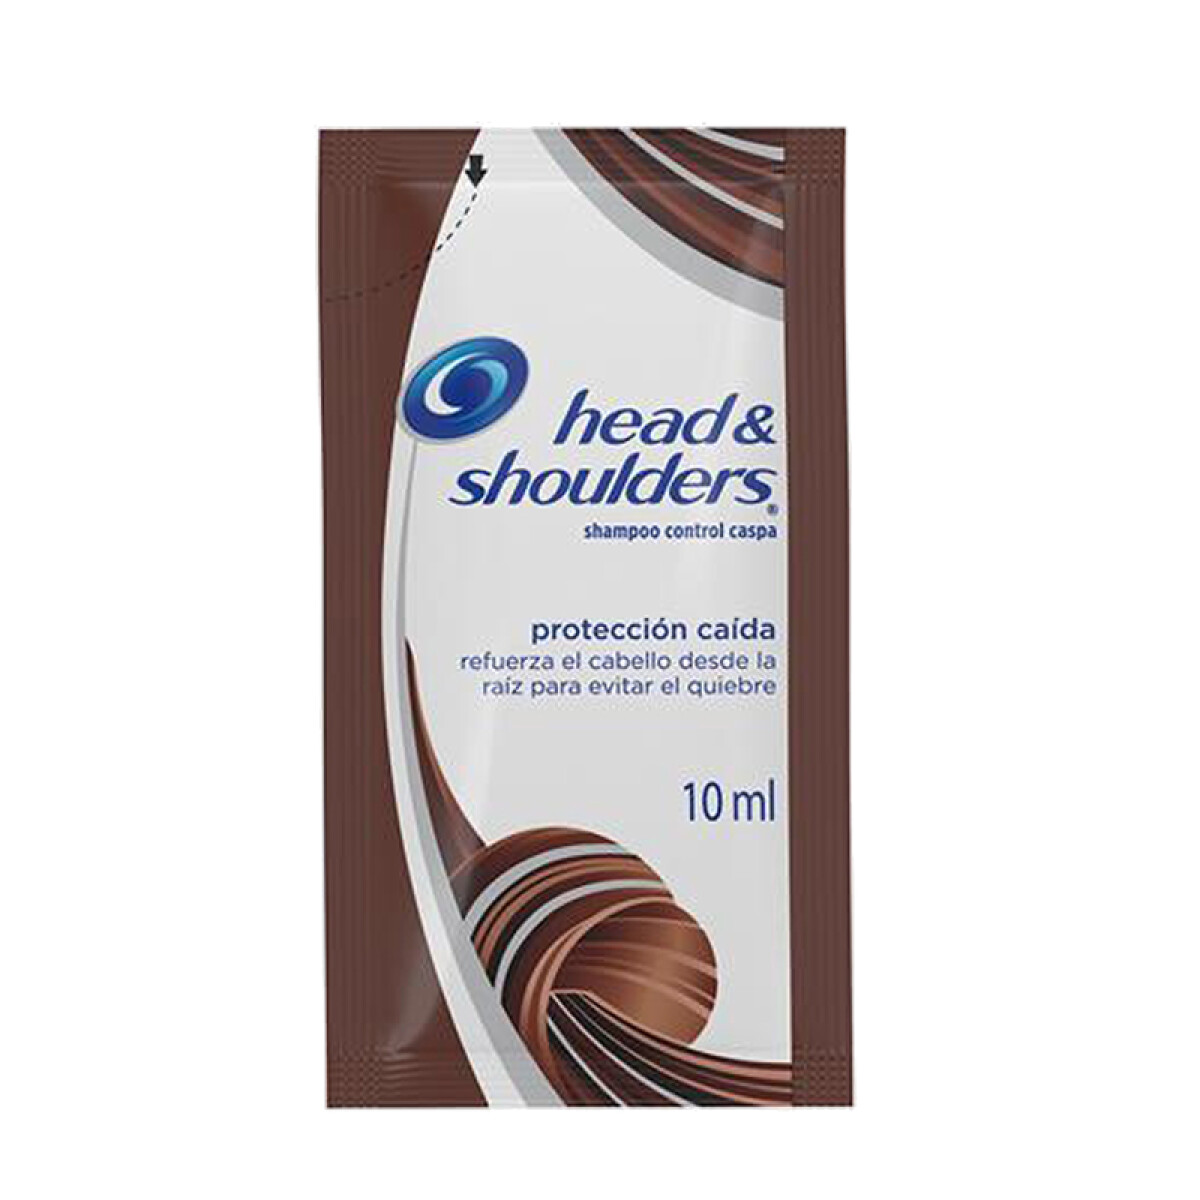 Sachet Shampoo HEAD & SHOULDERS 10ml x24 Unidades - Protección Caída 